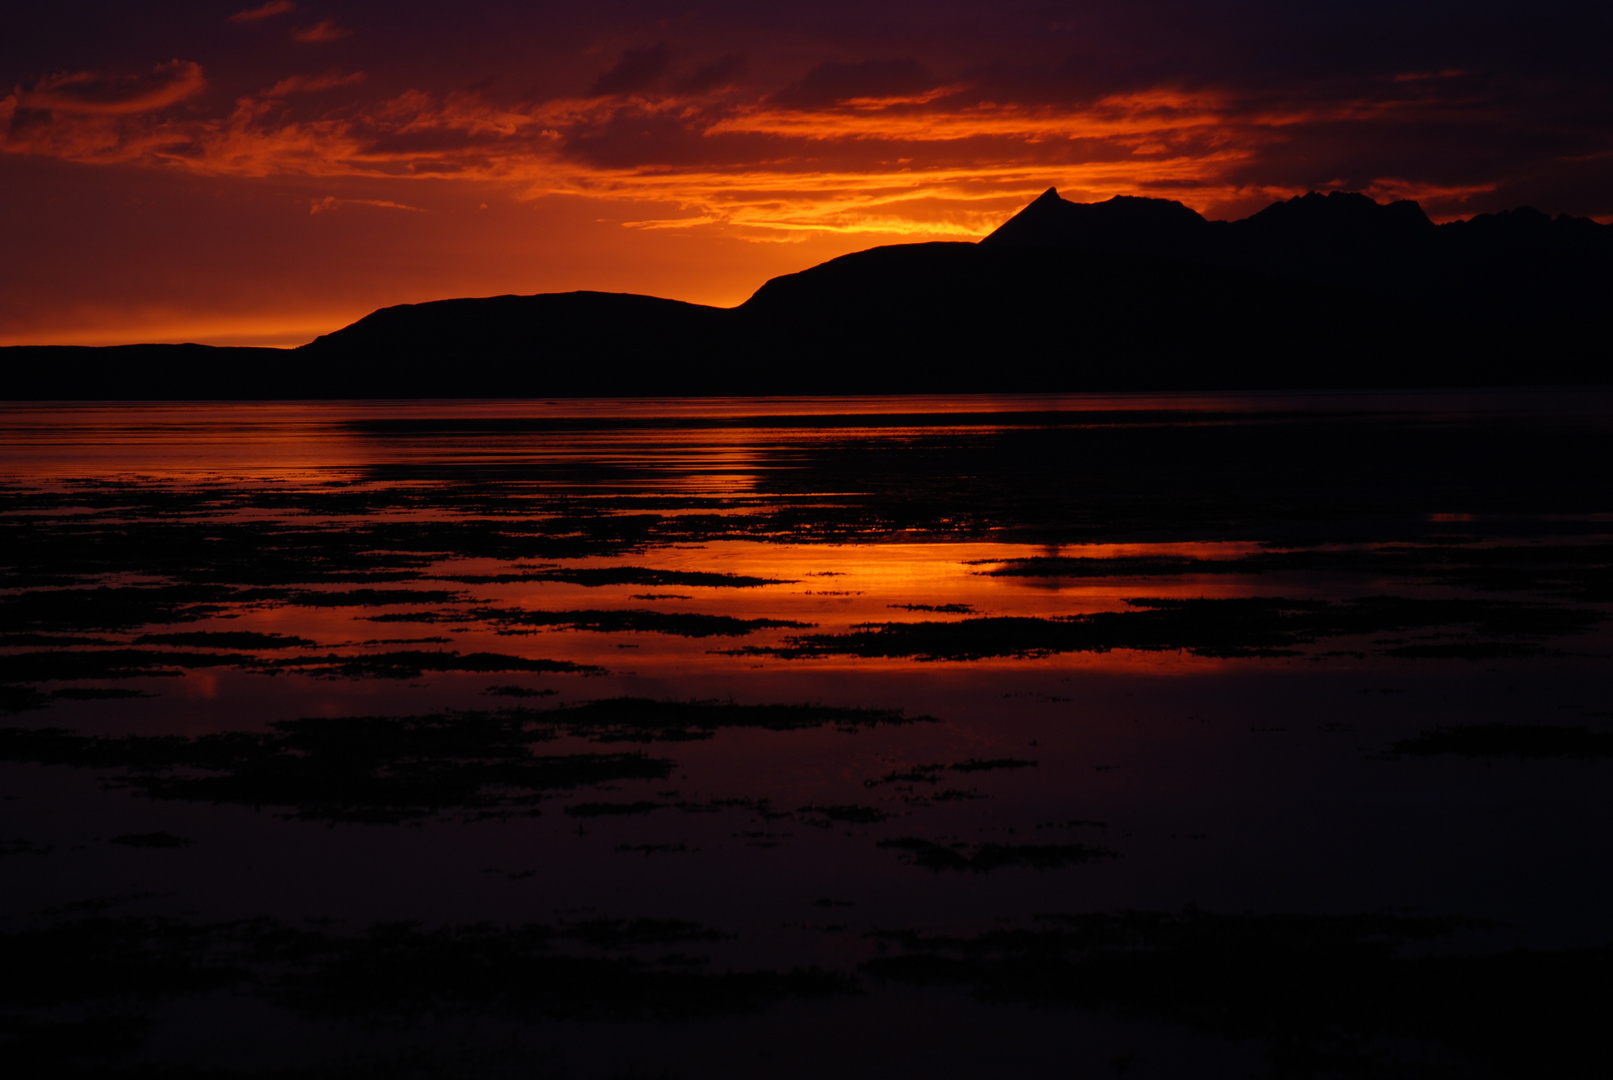 Sunset Loch Eishort